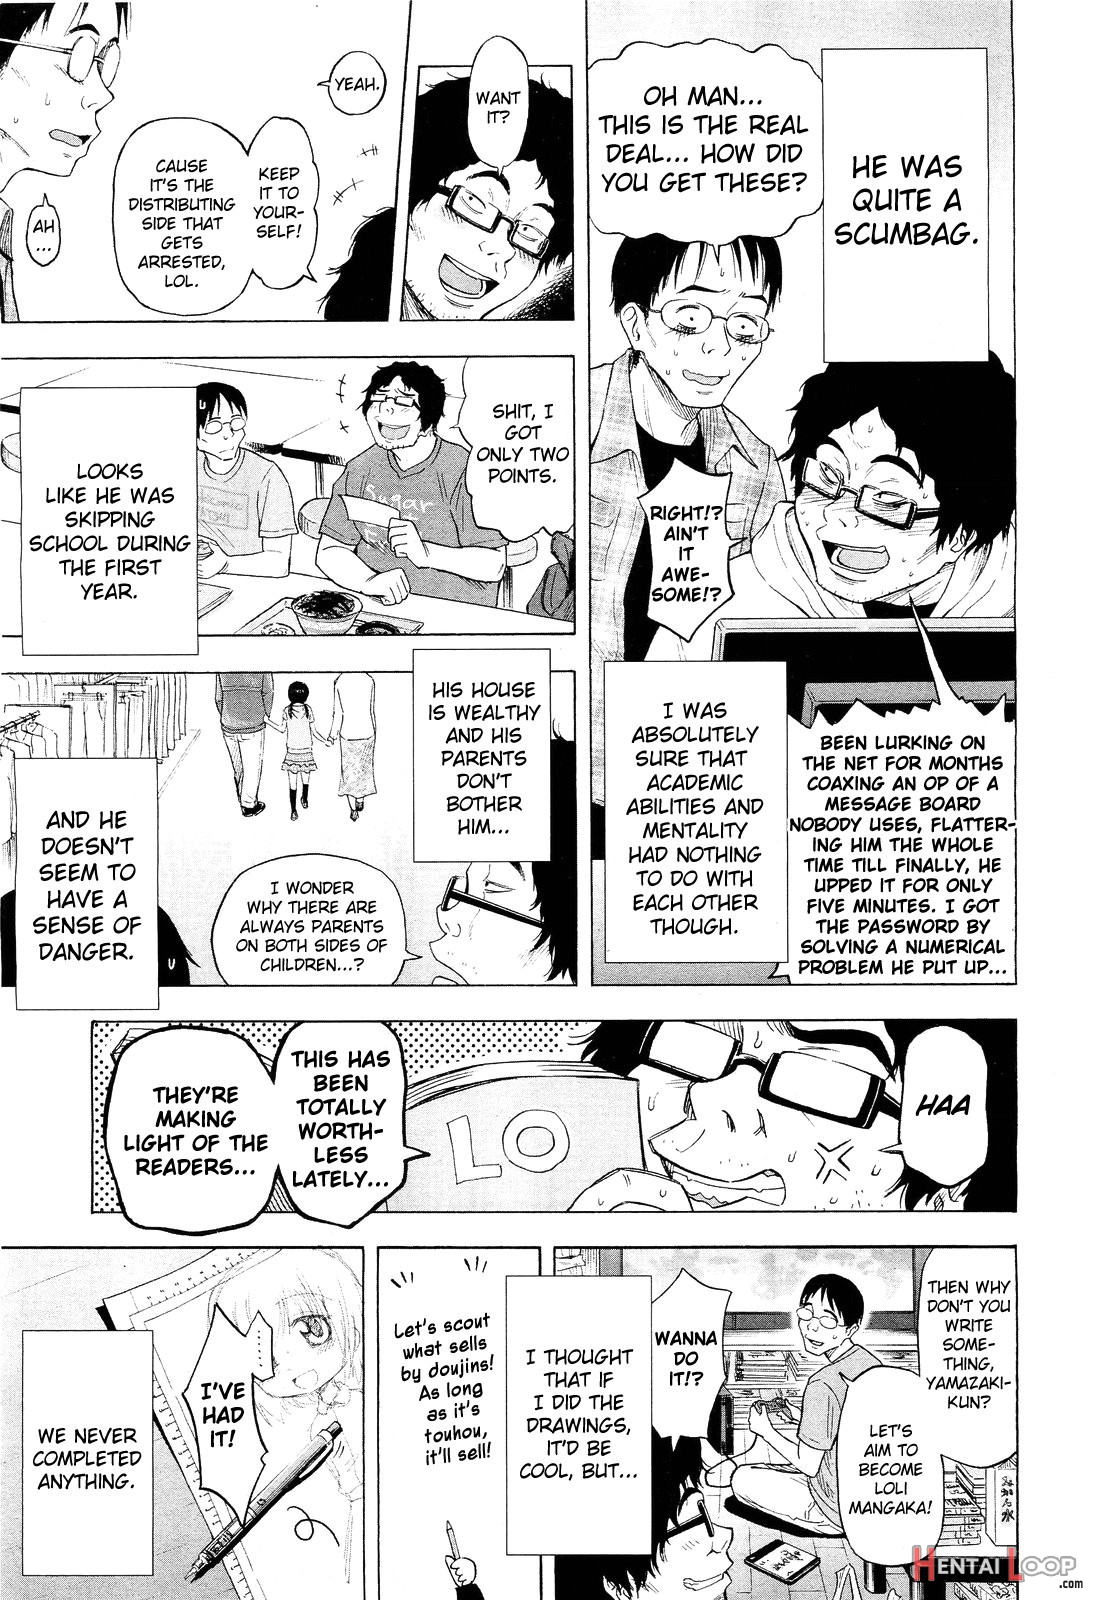 Loli Tomodachi page 3